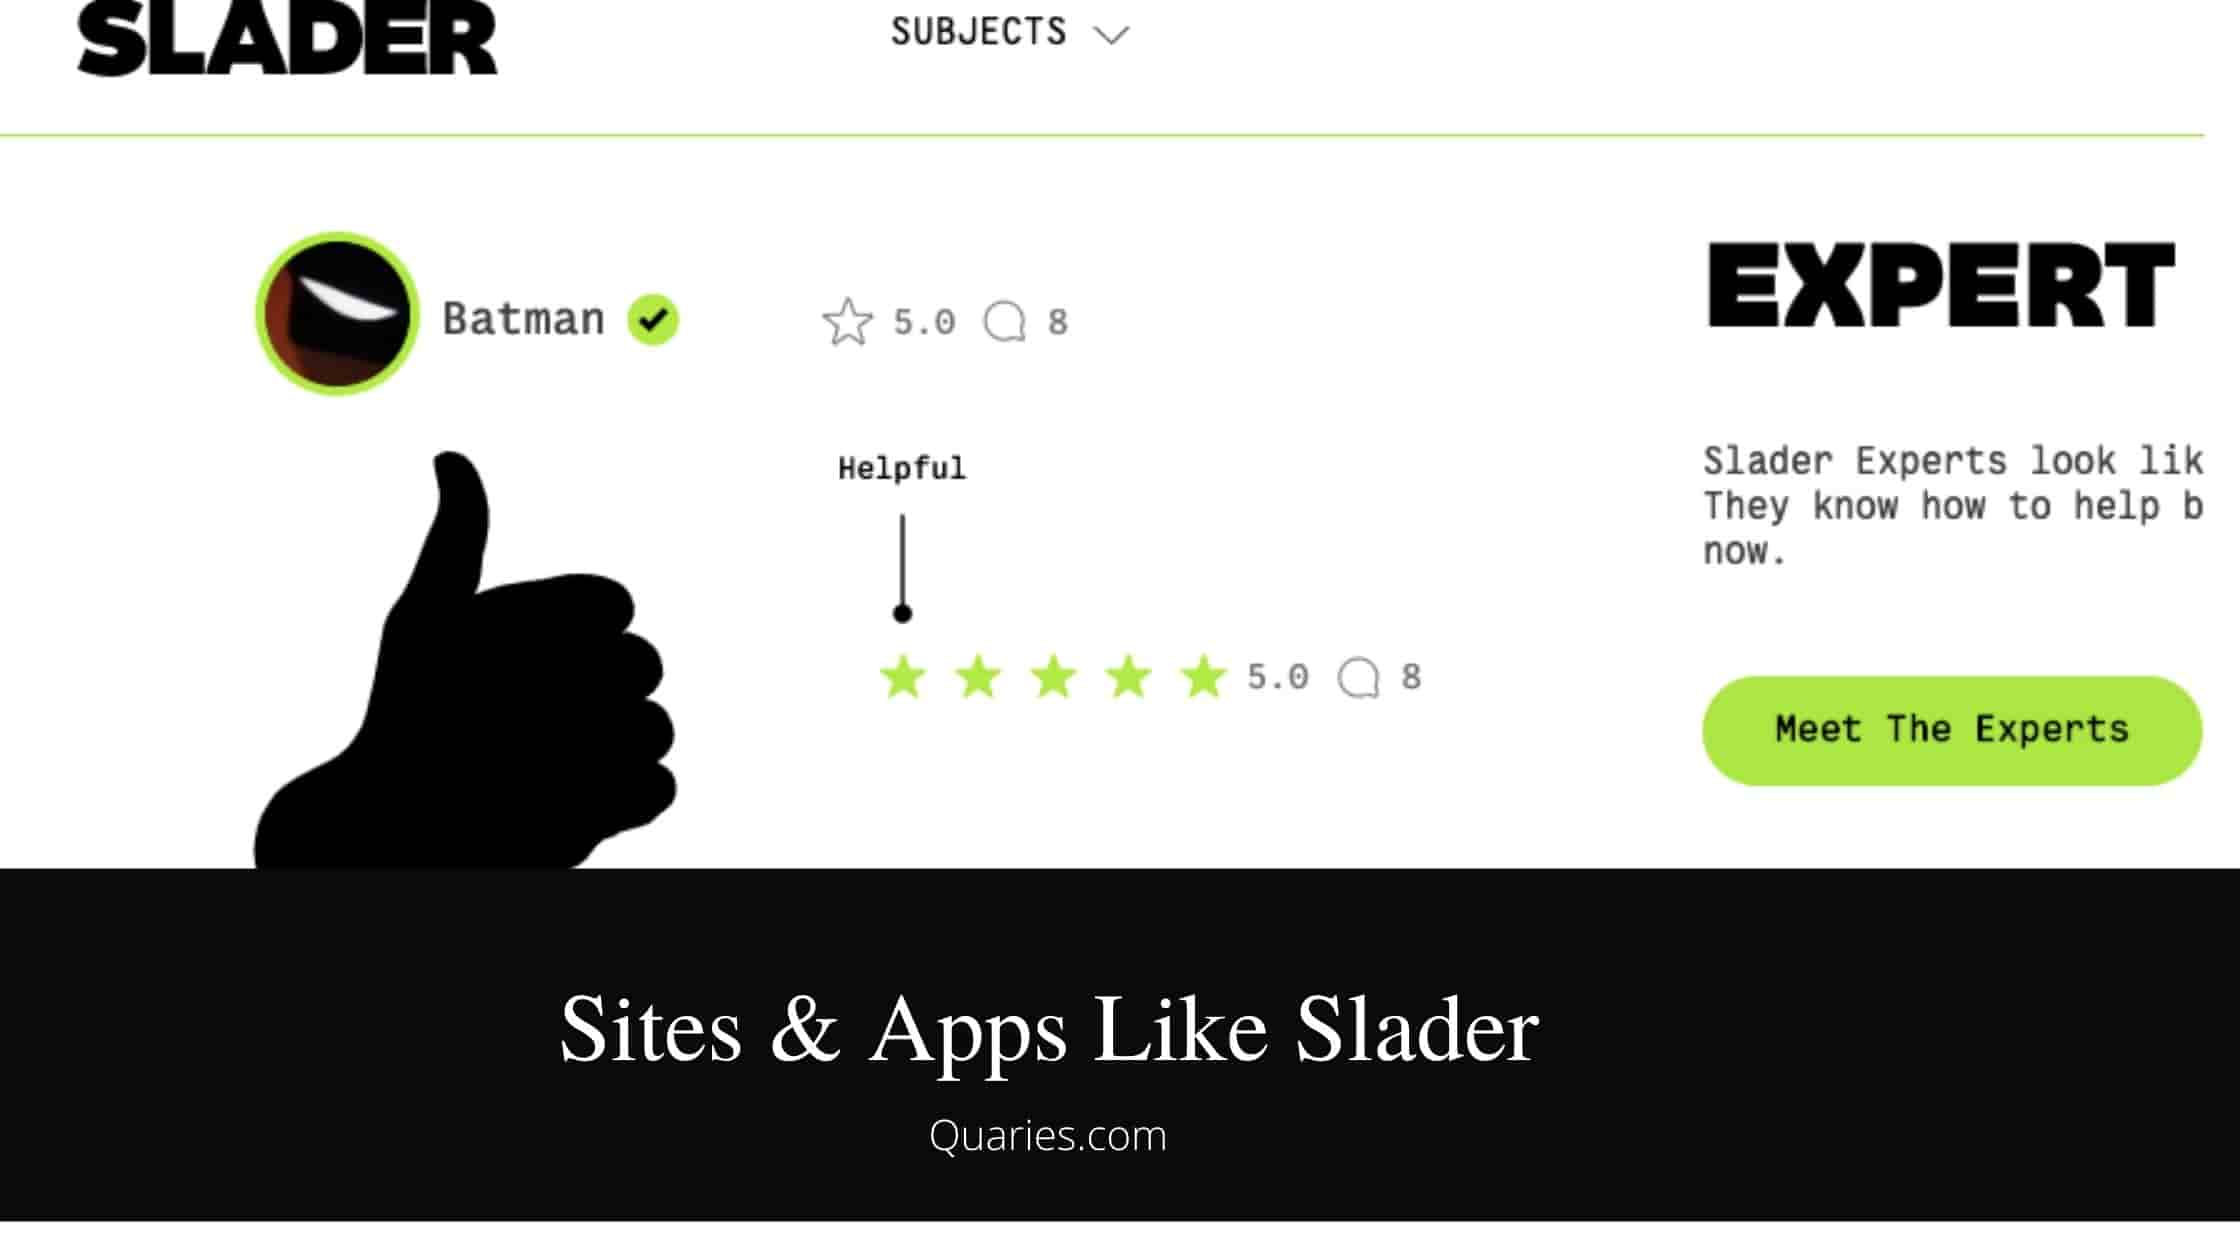 Sites & Apps Like Slader